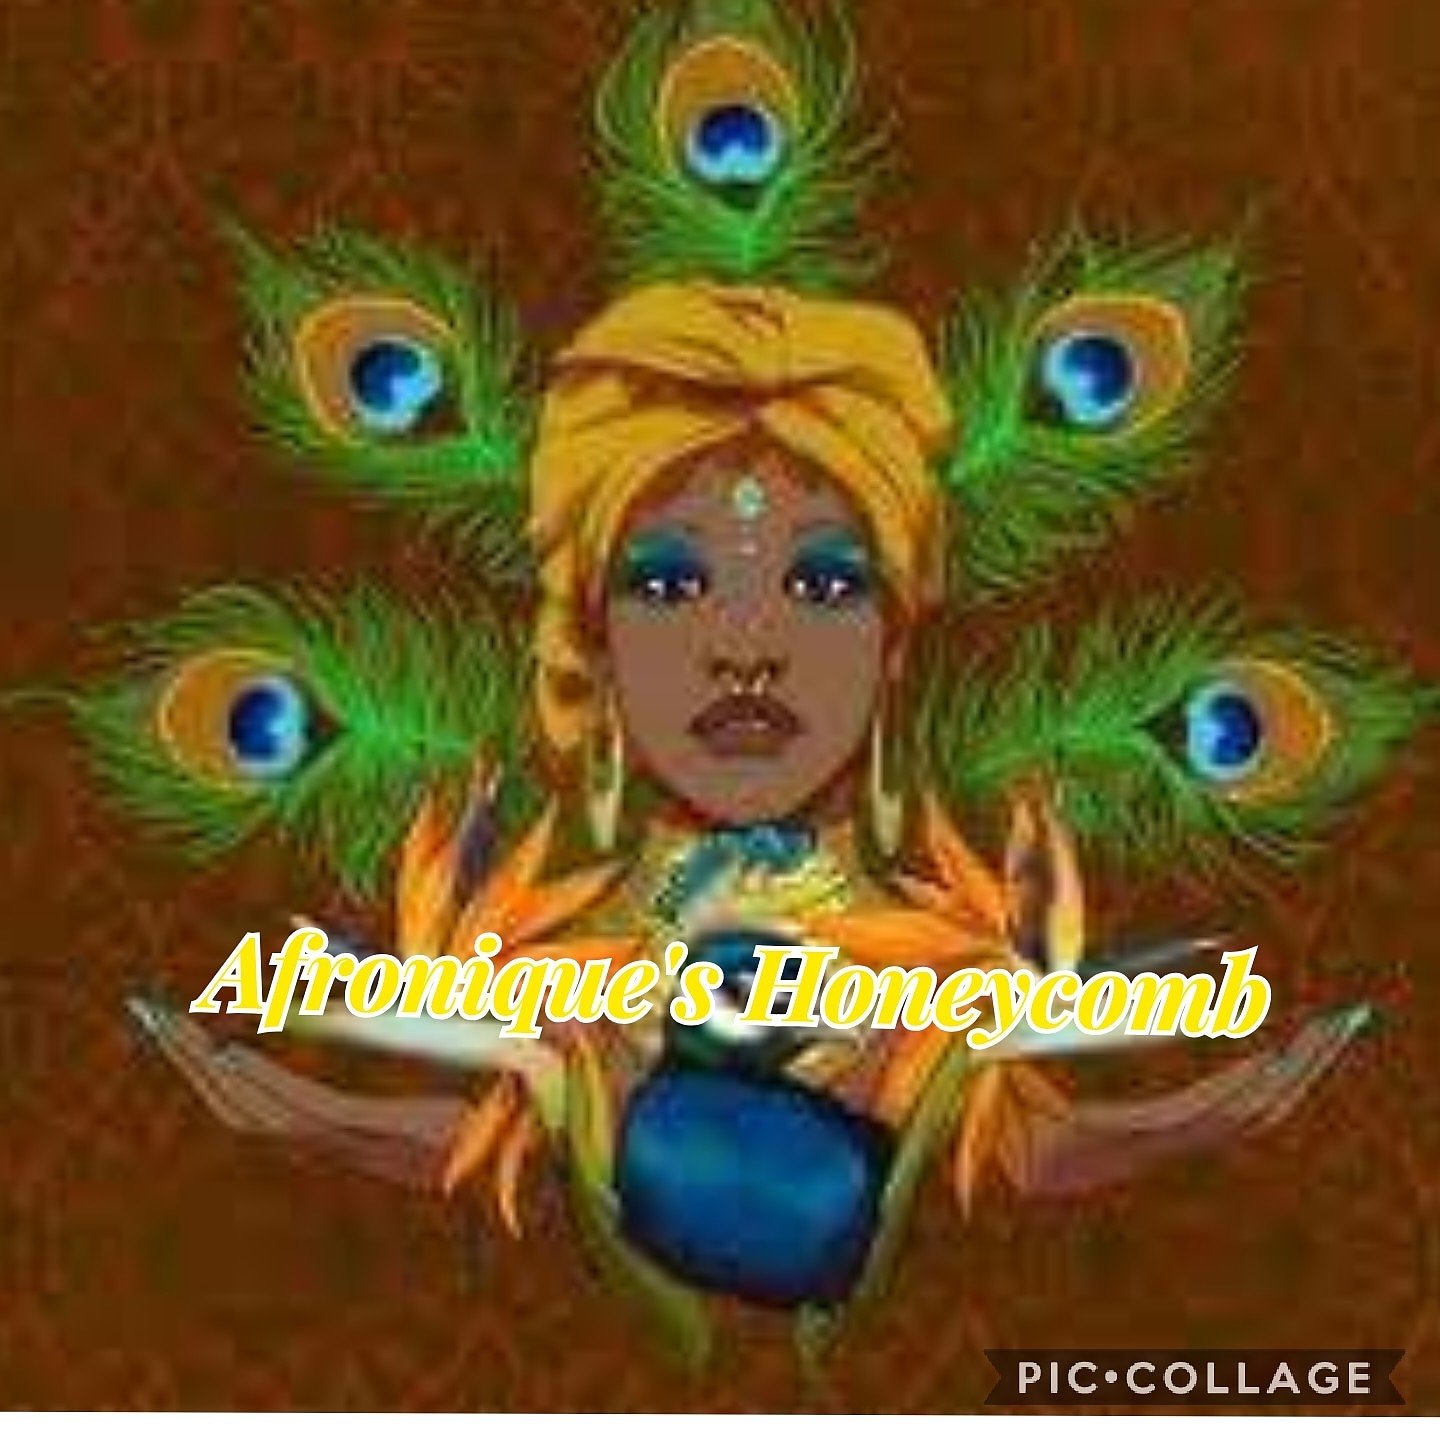 Afronique's Honeycomb 